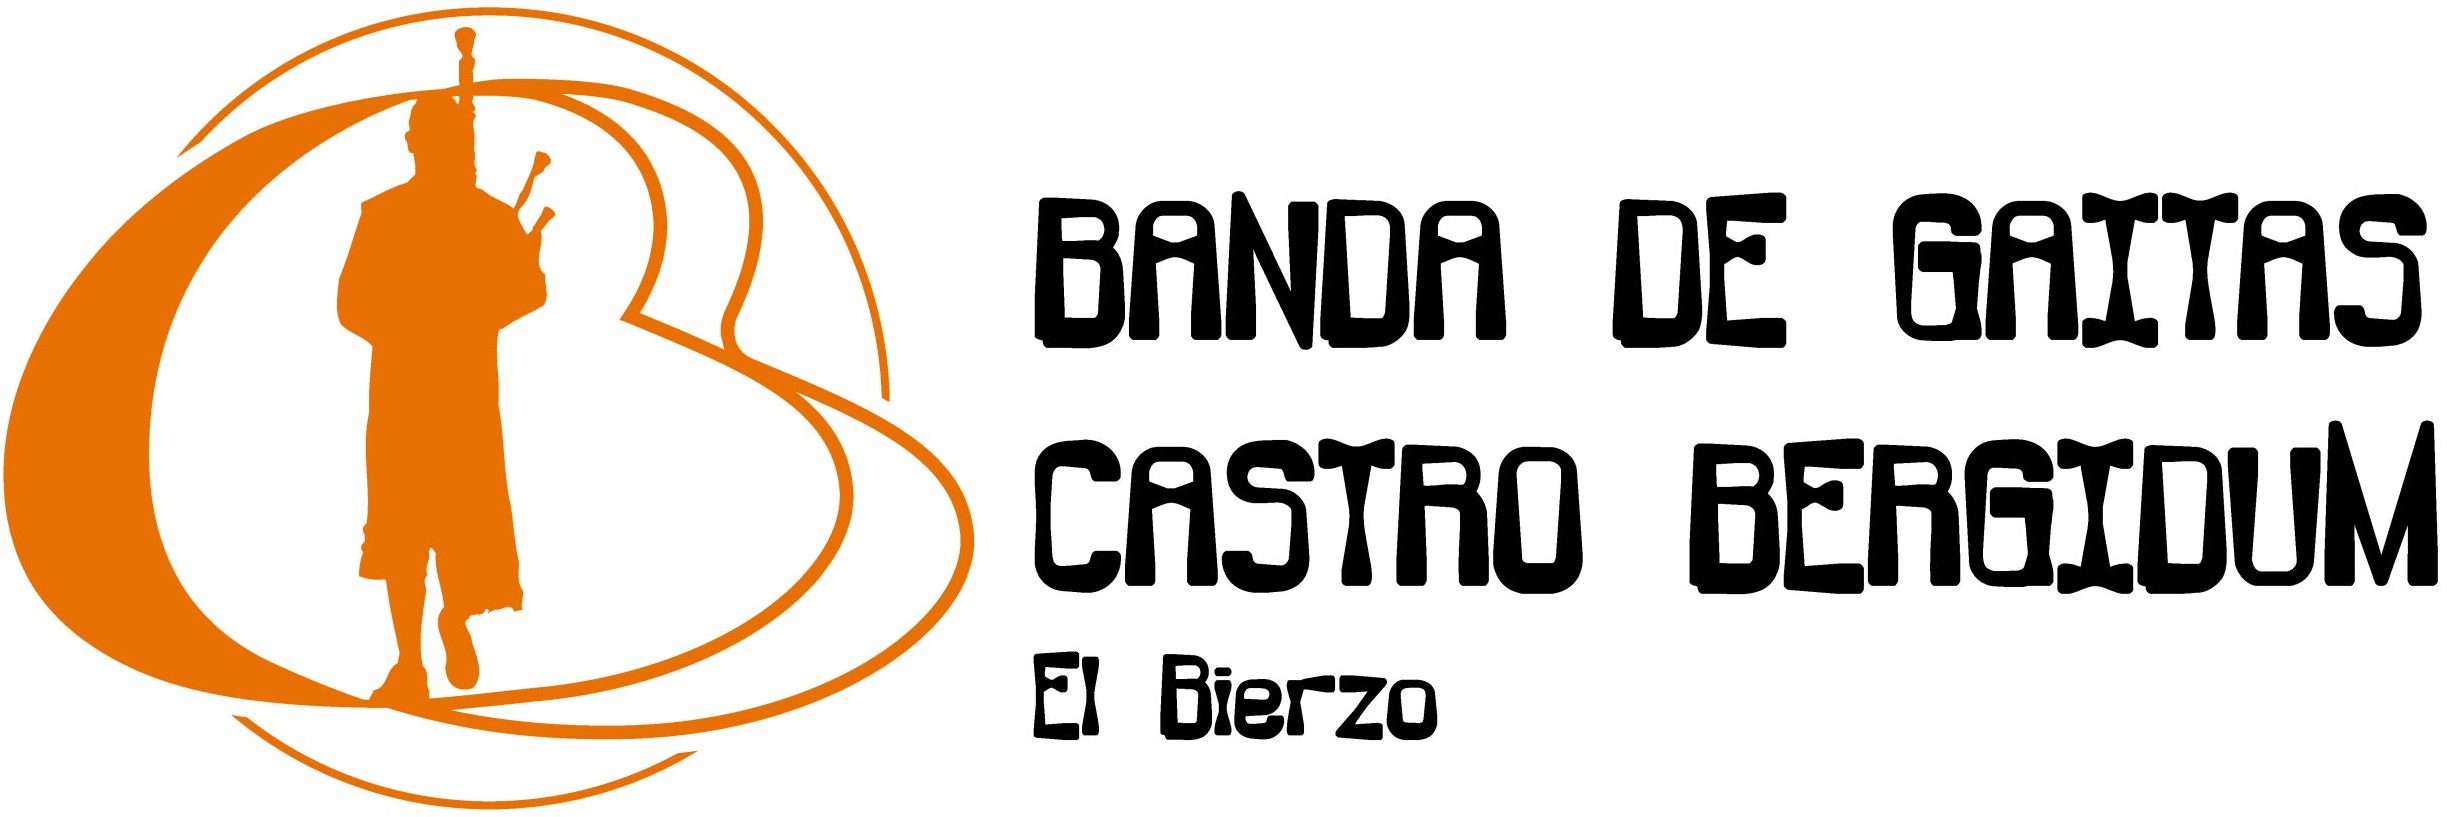 Logotipo castro bergidum